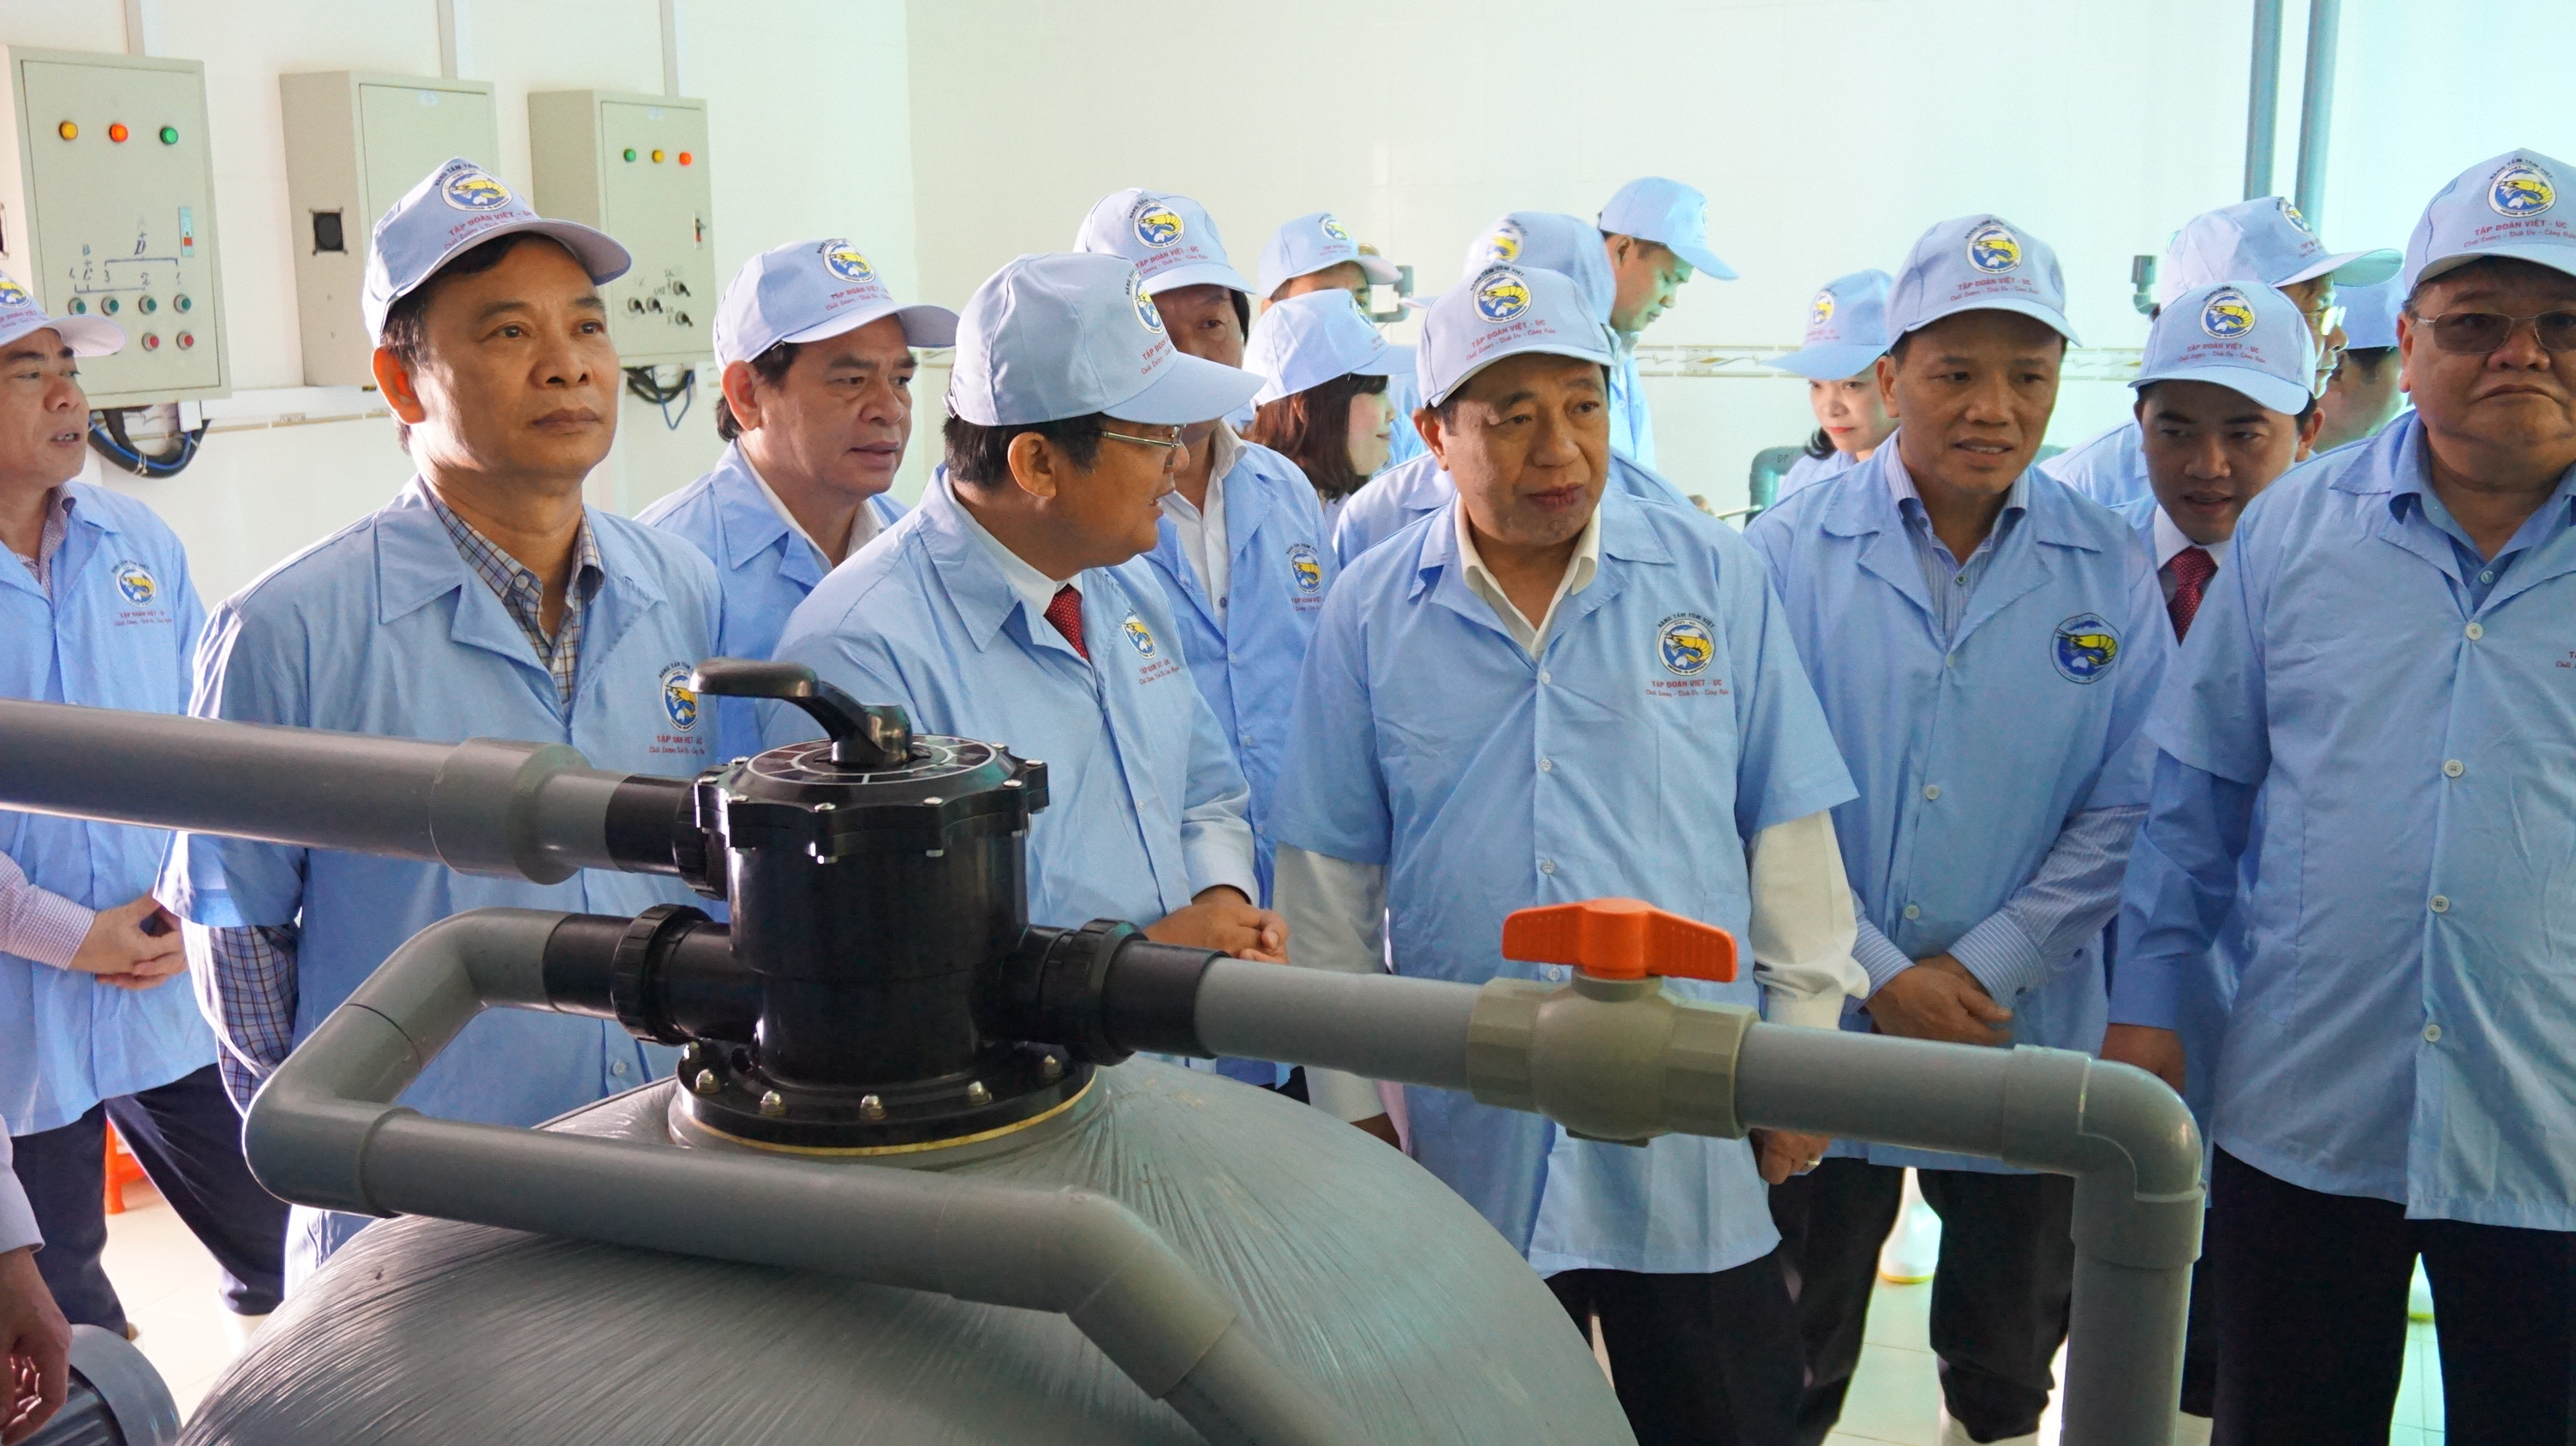 Quỳnh Lưu là địa phương có nhiều ứng dụng khoa học công nghệ trong sản xuất